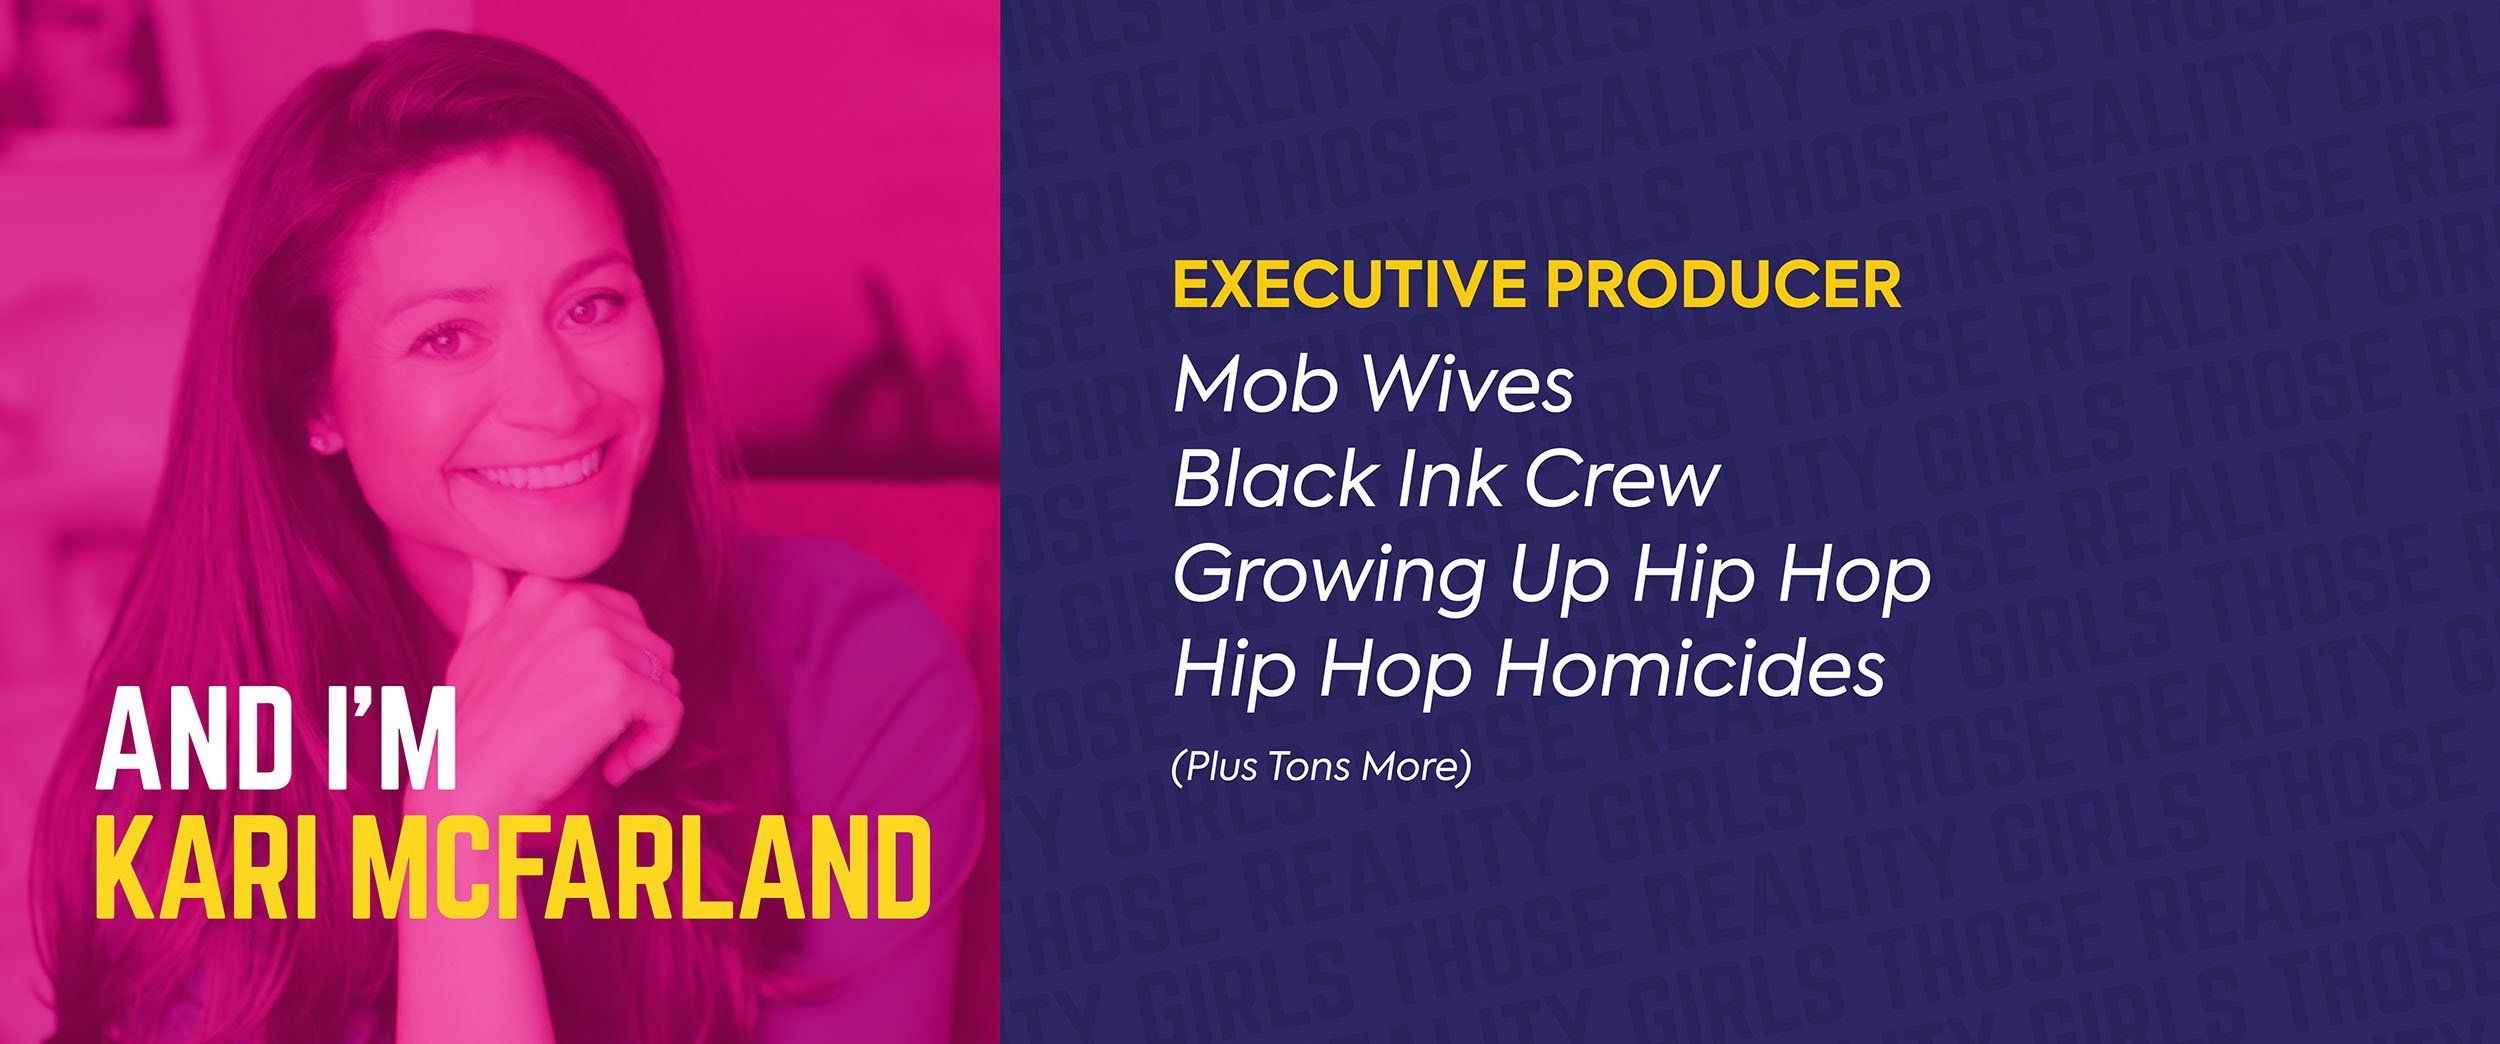 Meet Kari McFarland - Executive Producer behind Jersey Shore, Black Ink Crew and Mob Wives